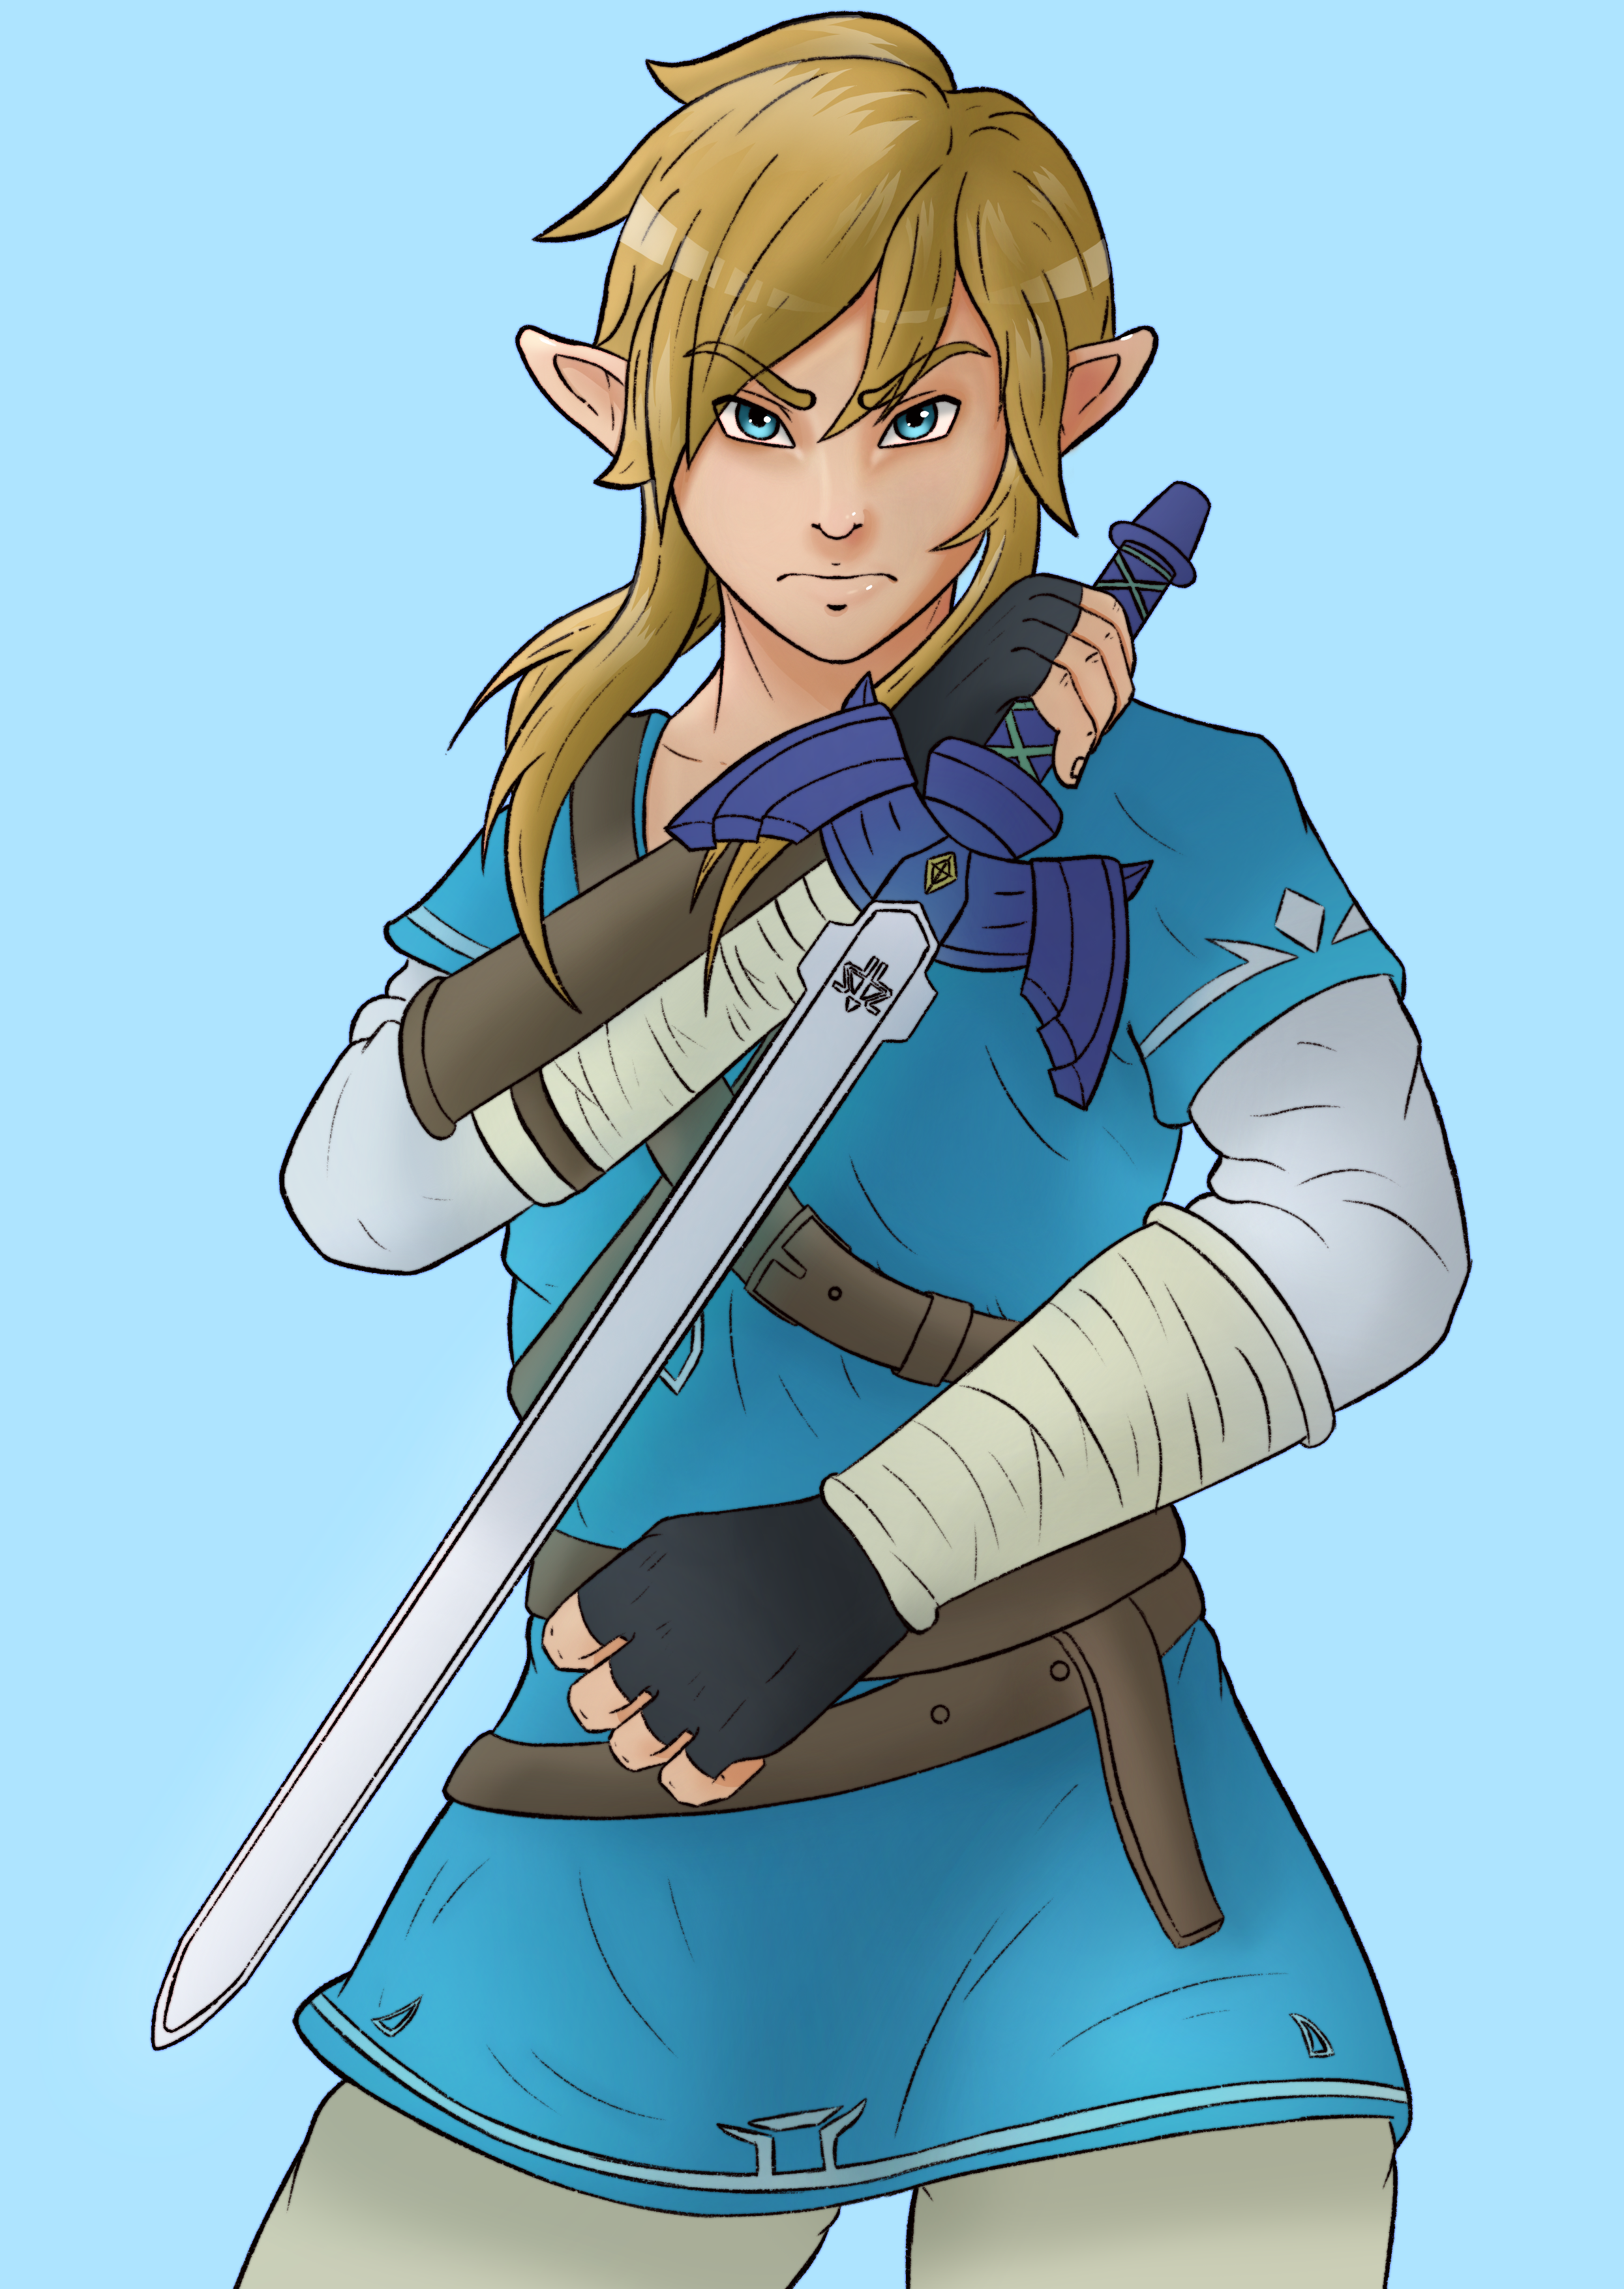 Link - The legend of Zelda : Breath of the Wild